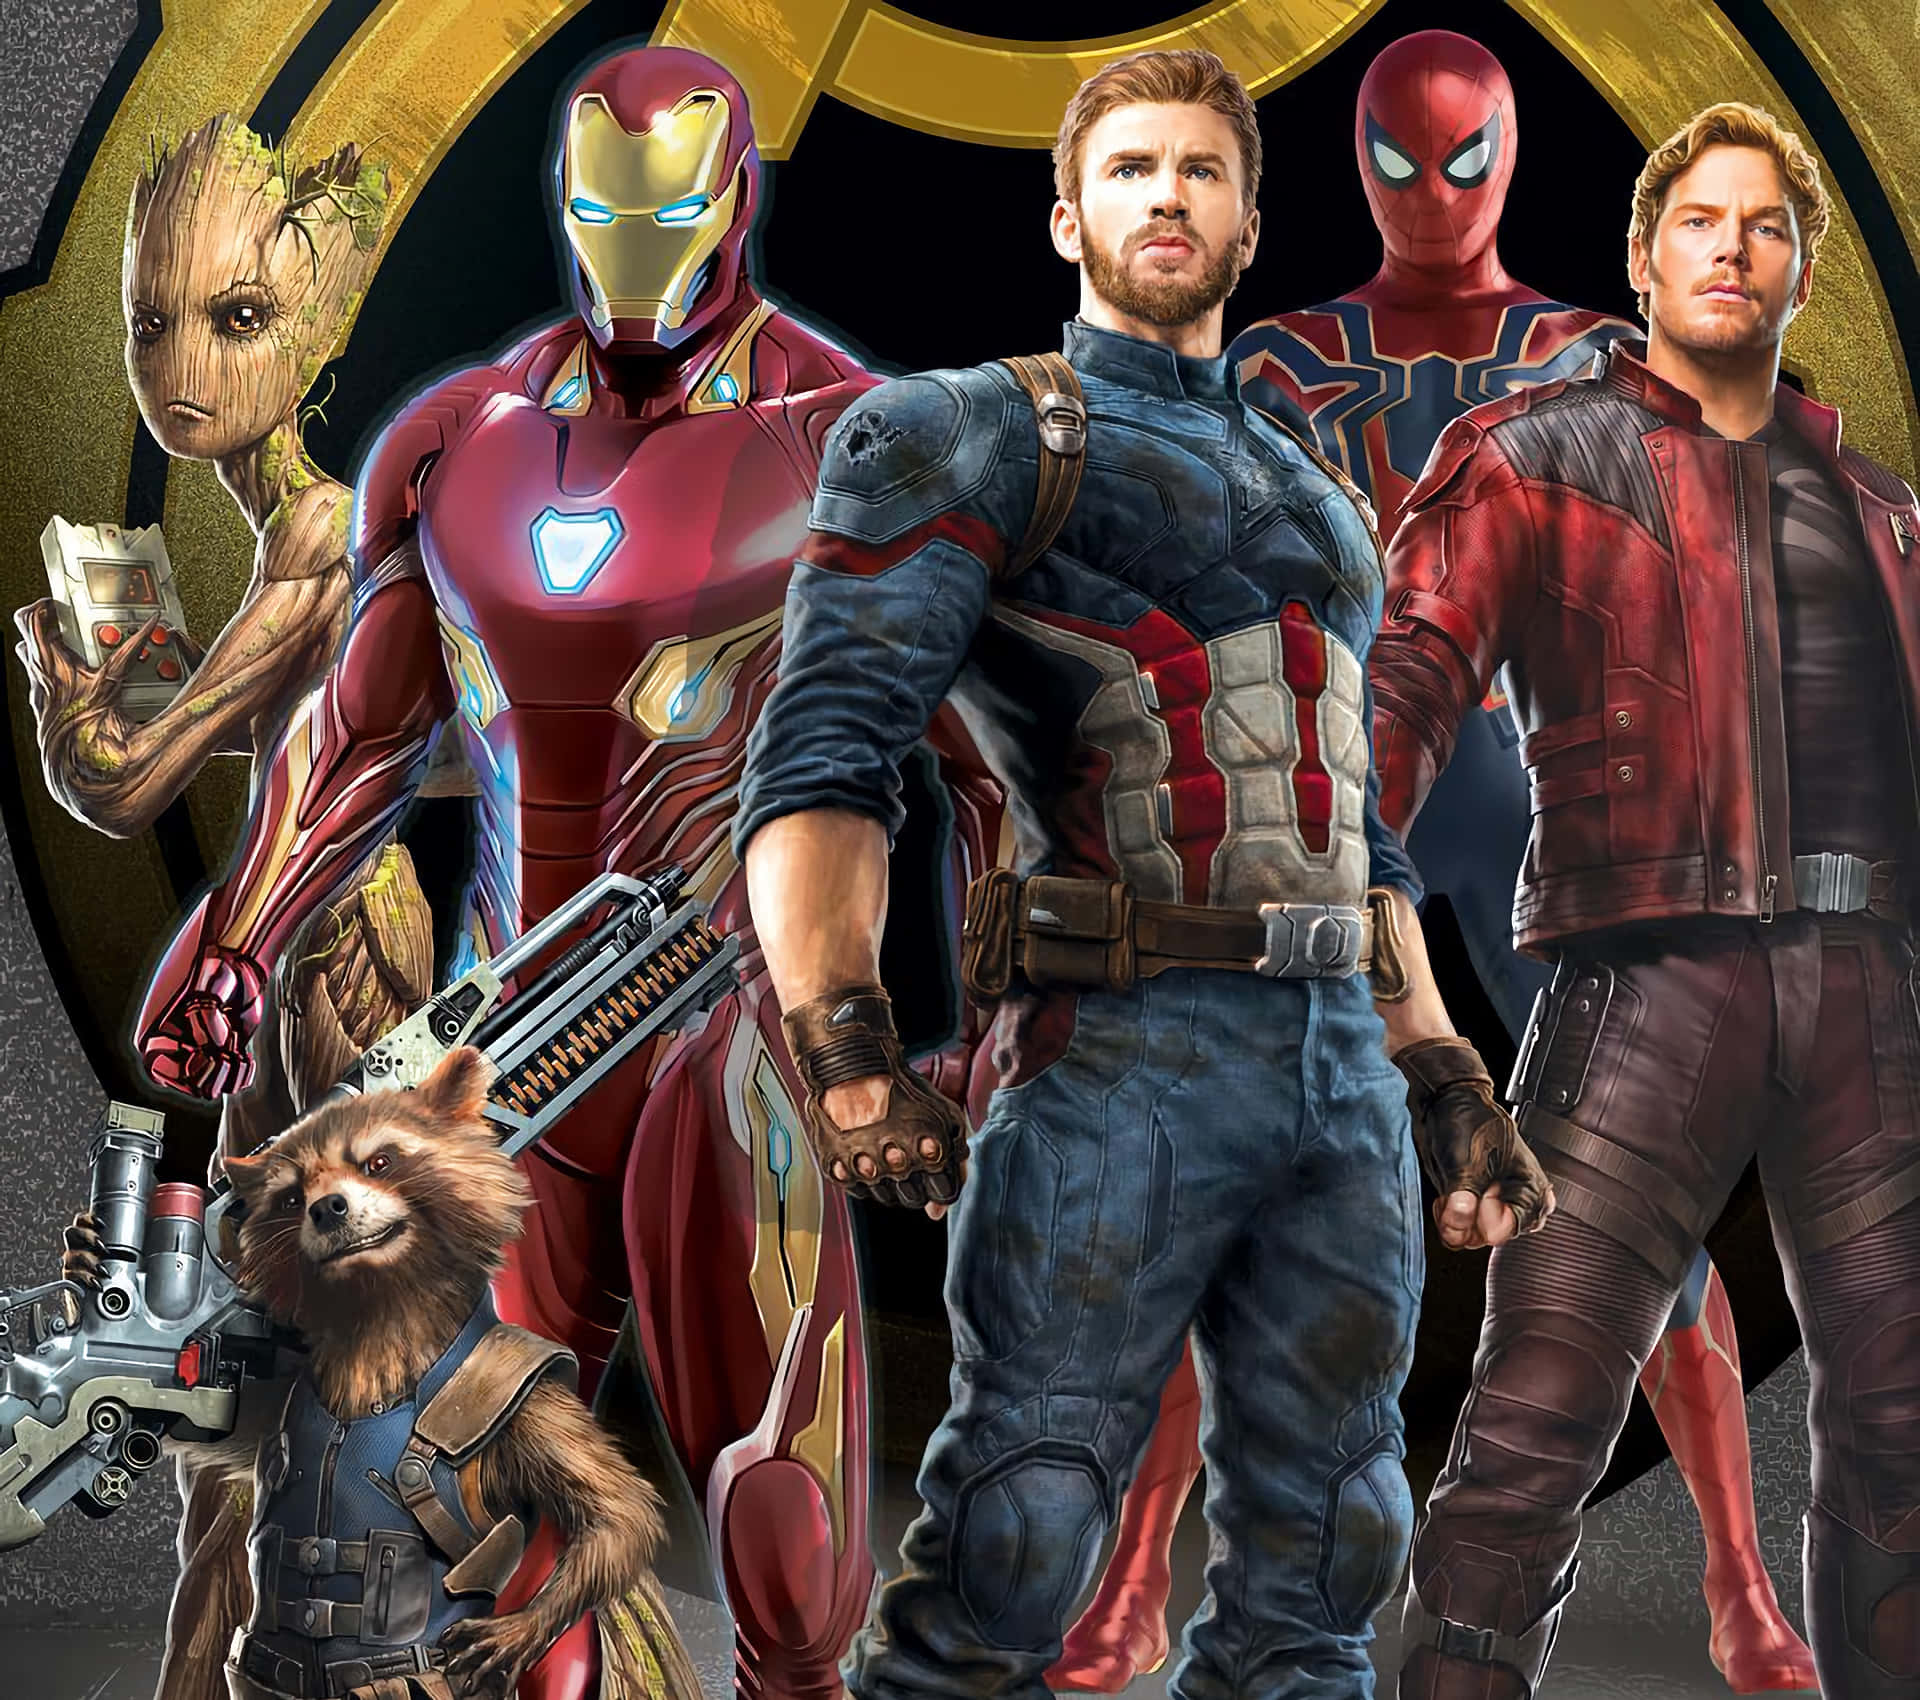 Avengers assemble for the ultimate battle, in Marvel Studios' "Avengers: Infinity War" Wallpaper